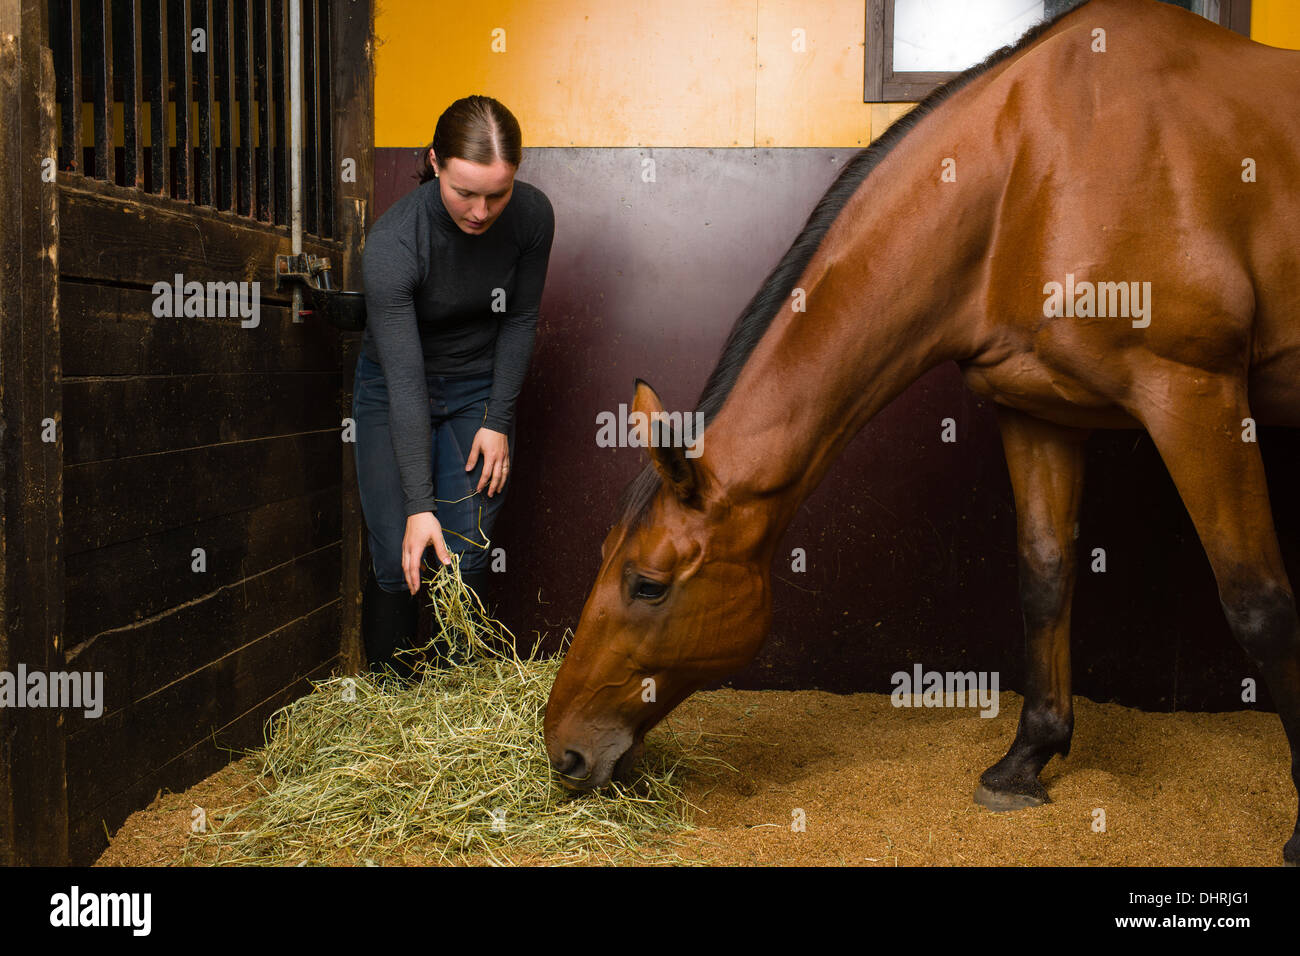 Woman feeding horse dans la stalle, d'horizon Banque D'Images